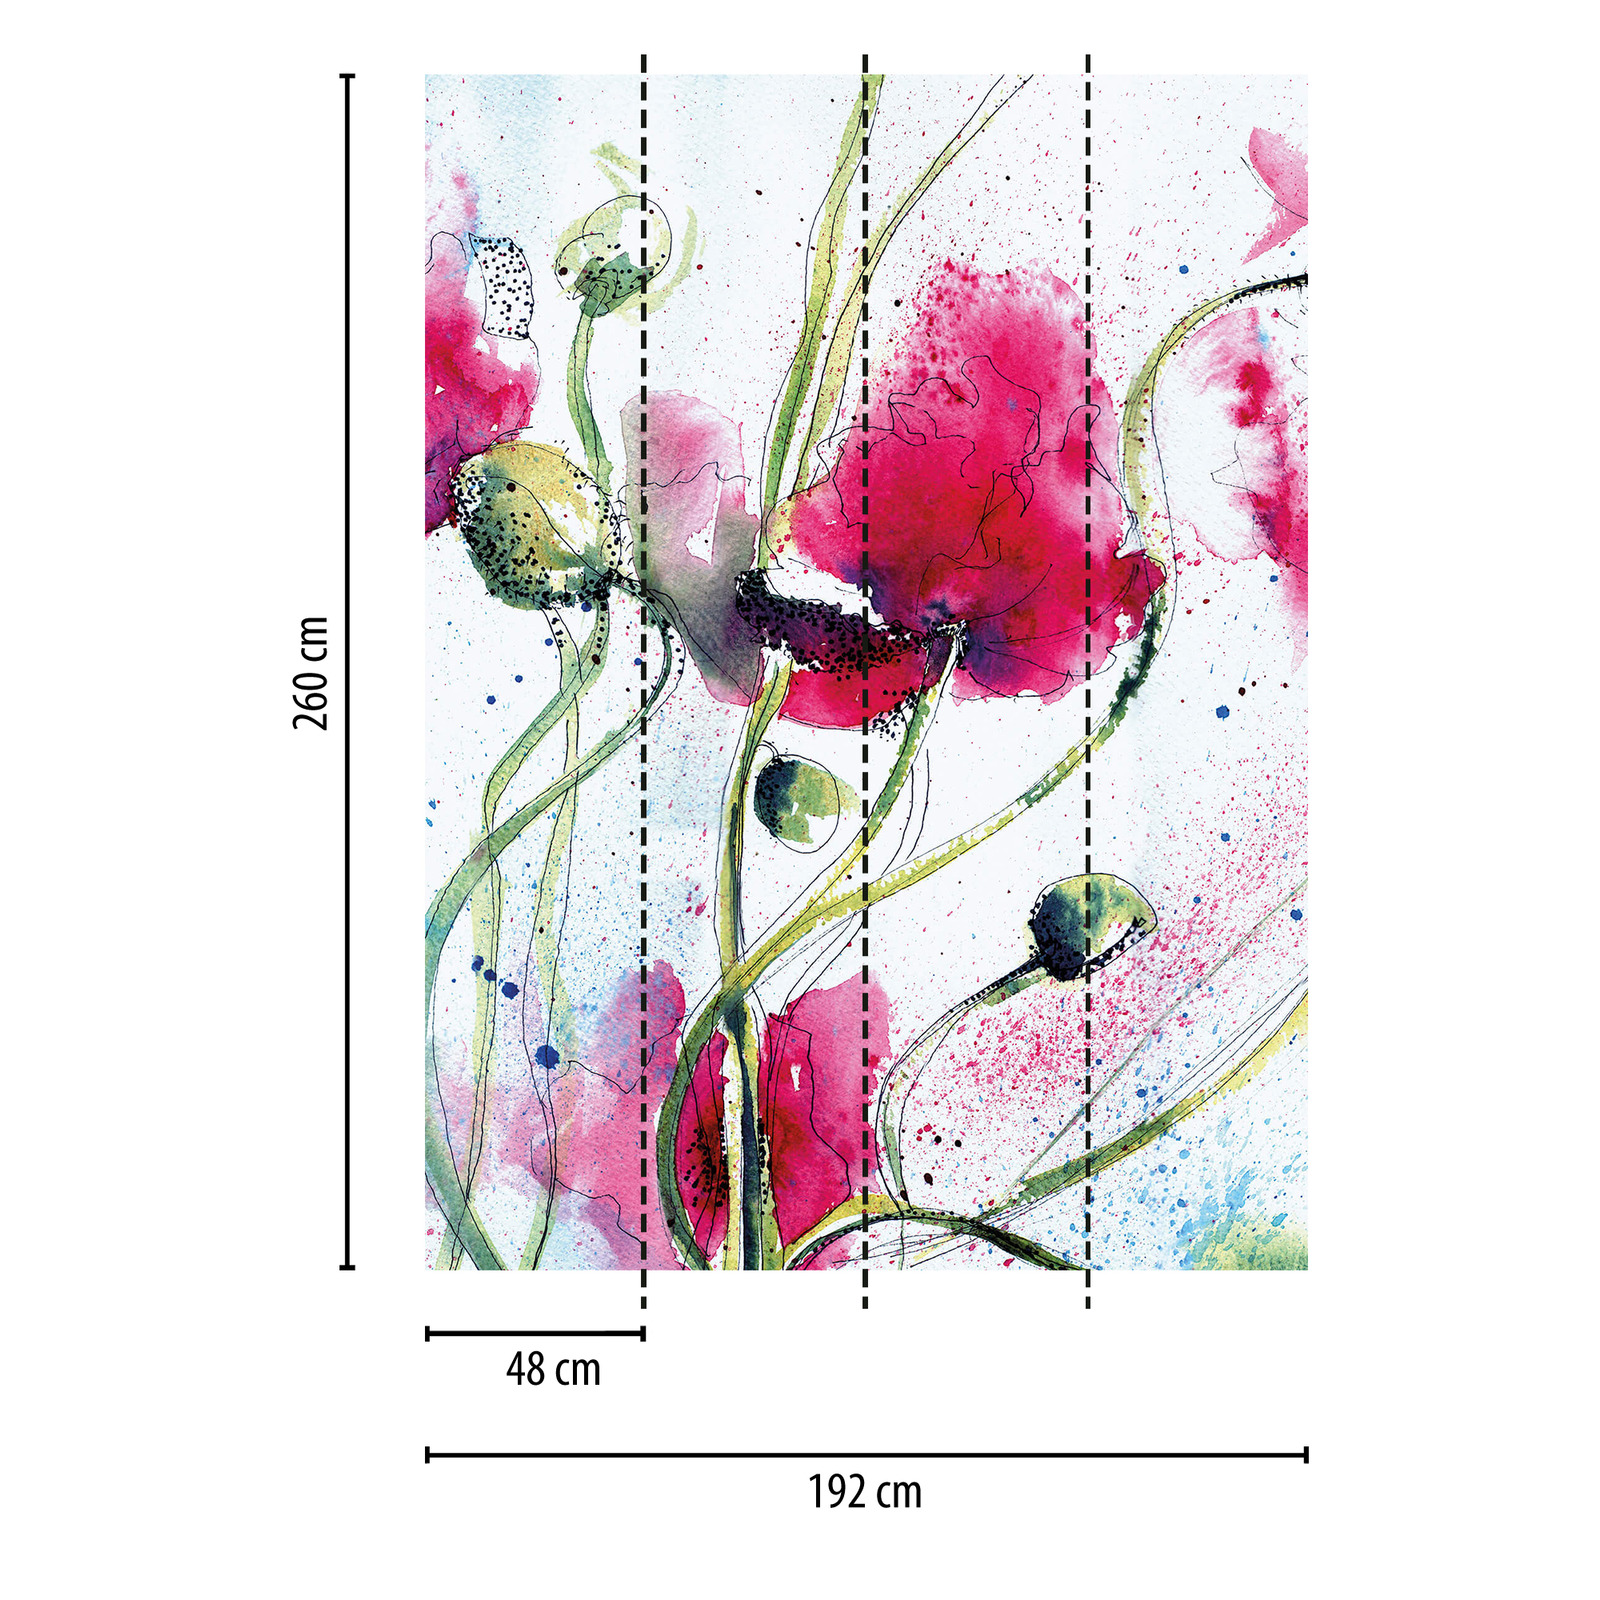             Fotomurali con fiori disegnati stretti - multicolore
        